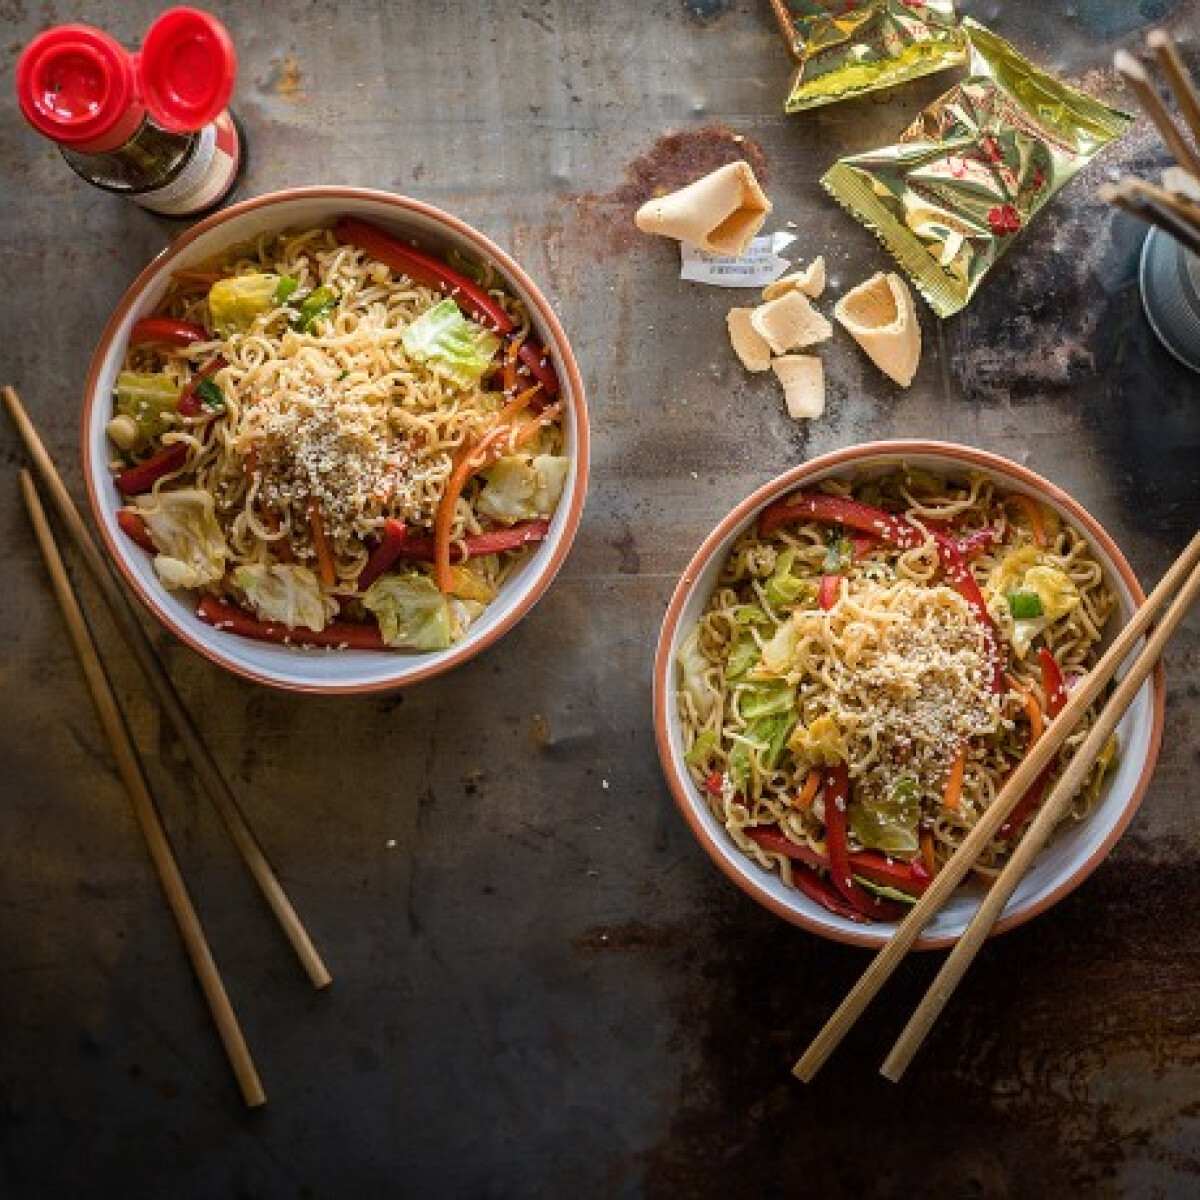 Kínai büfés kedvenc: pirított tészta, ami 30 perc alatt az asztalra kerül